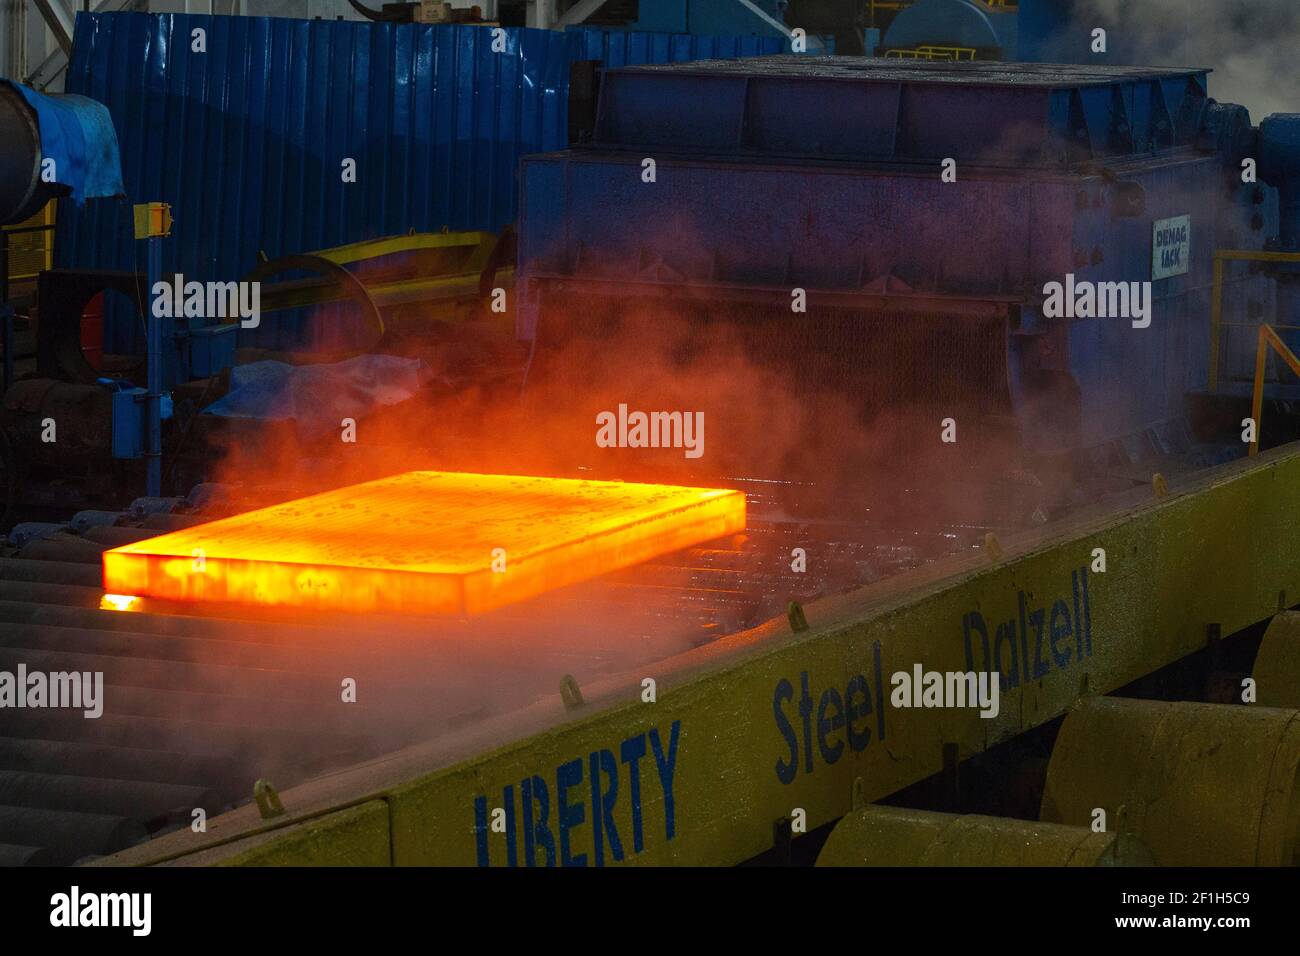 Liberty Steel Stock Photo